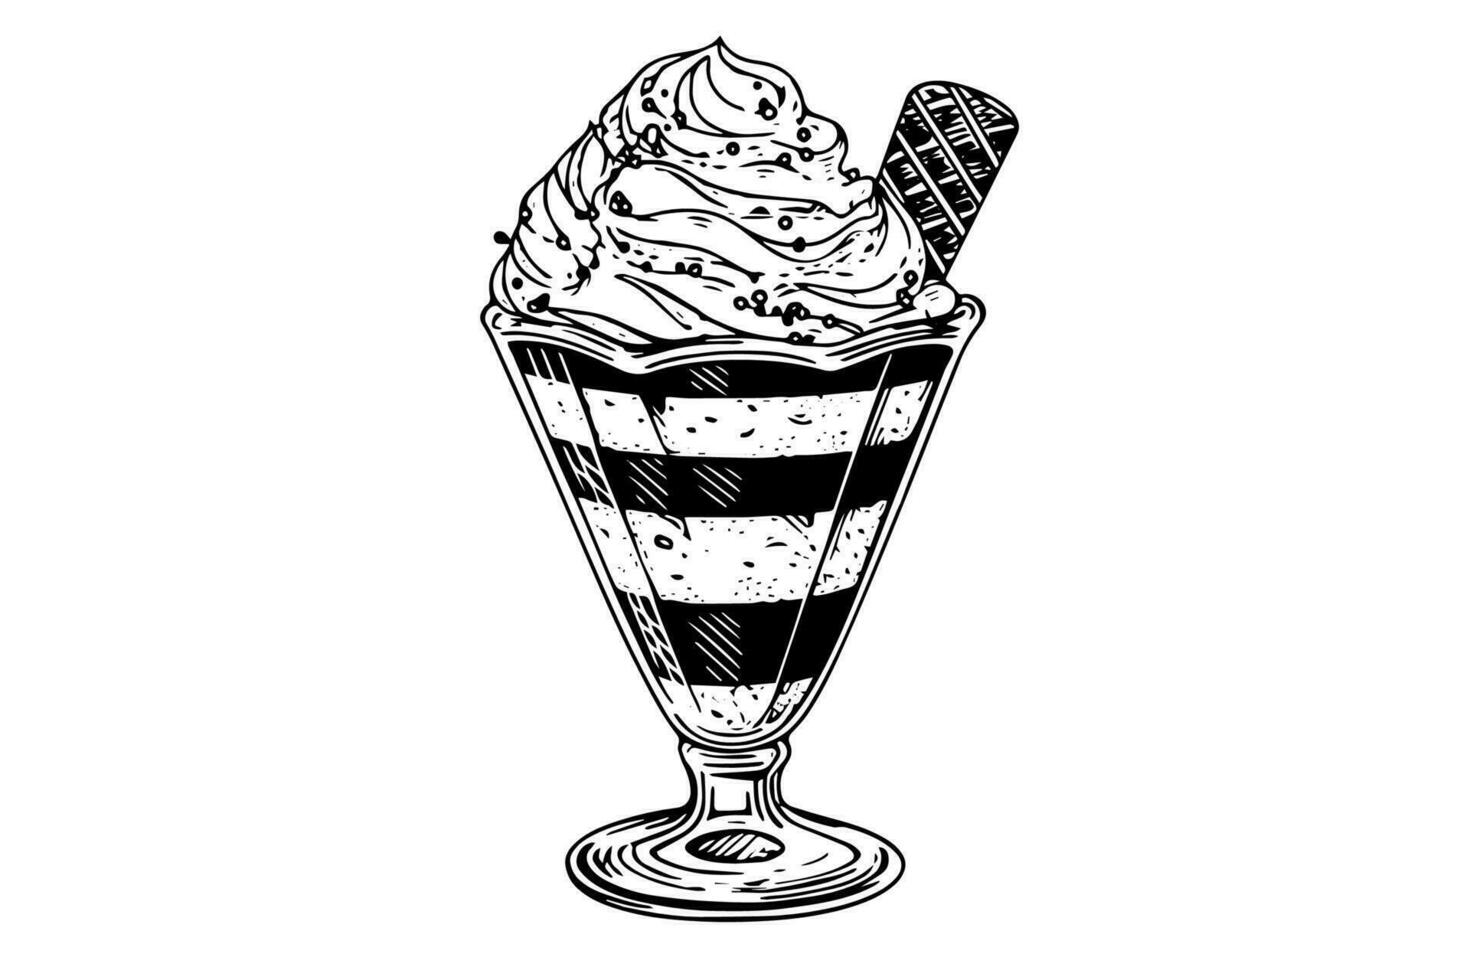 hielo crema cucharadas con bayas y oblea palos en vaso taza. tinta bosquejo grabado vector ilustración.